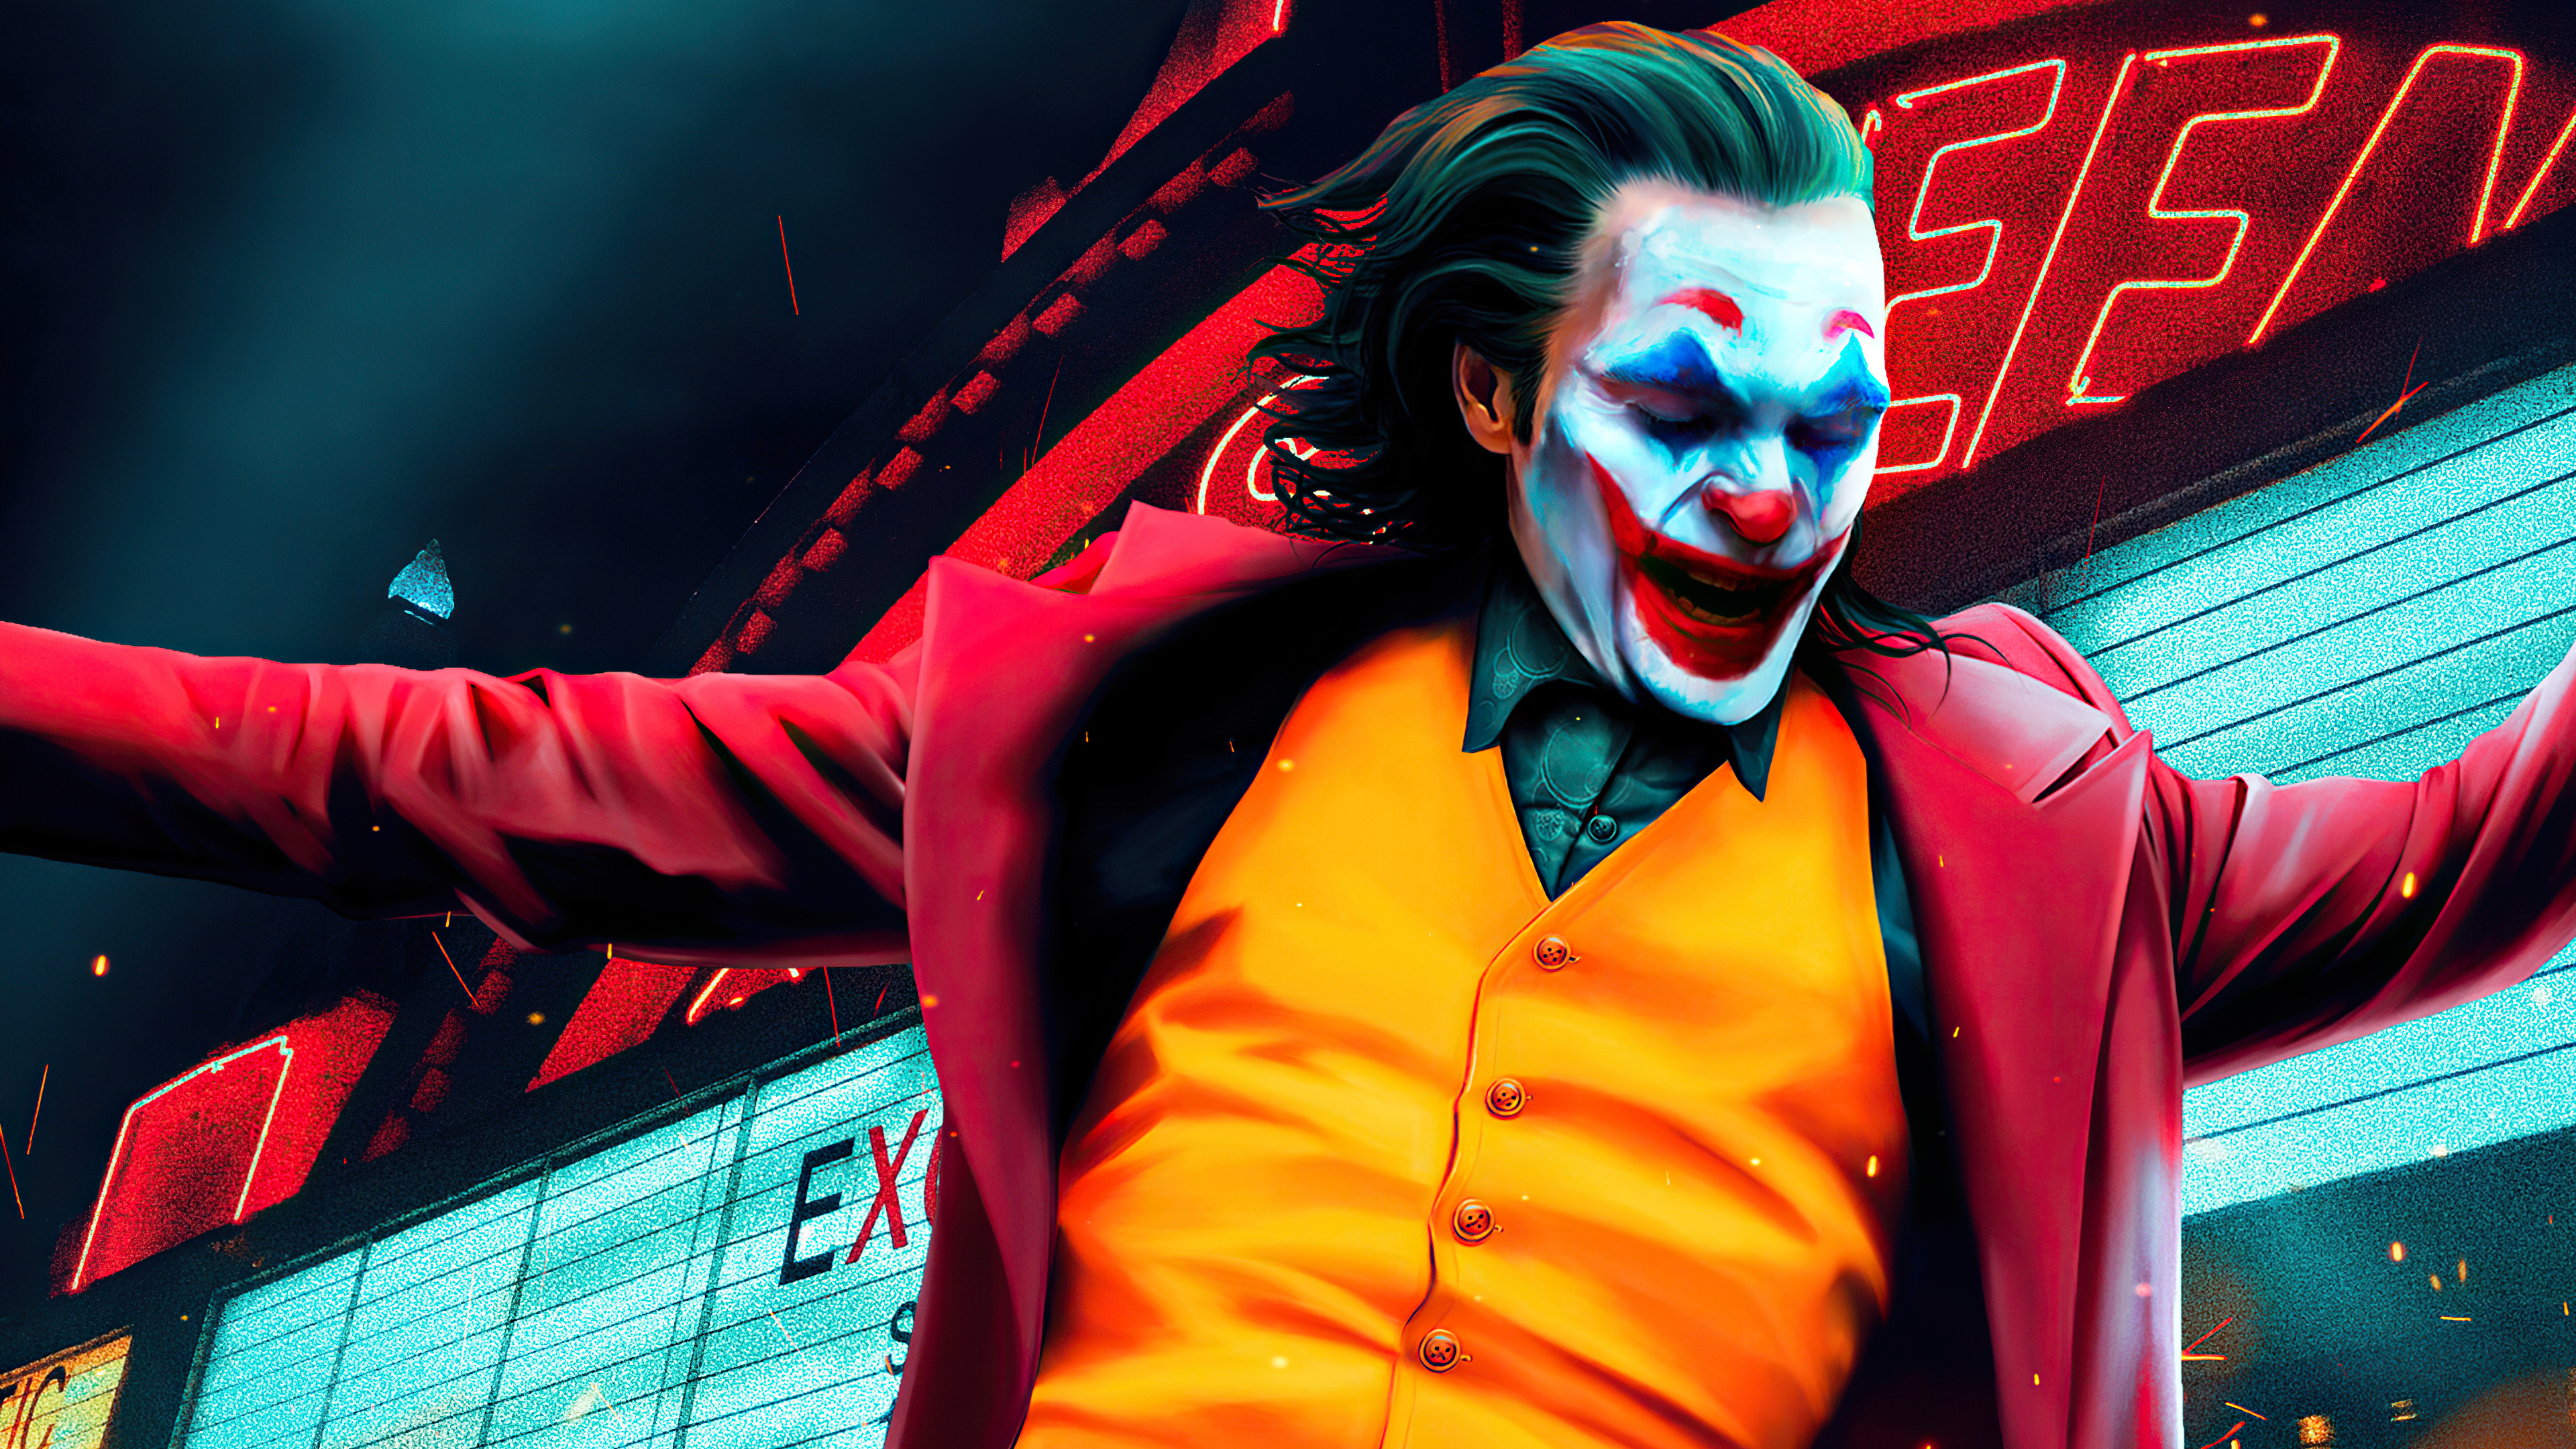 Joker Joaquin Phoenix Dancing 4k Wallpaperhd Superheroes Wallpapers4k Wallpapersimages 